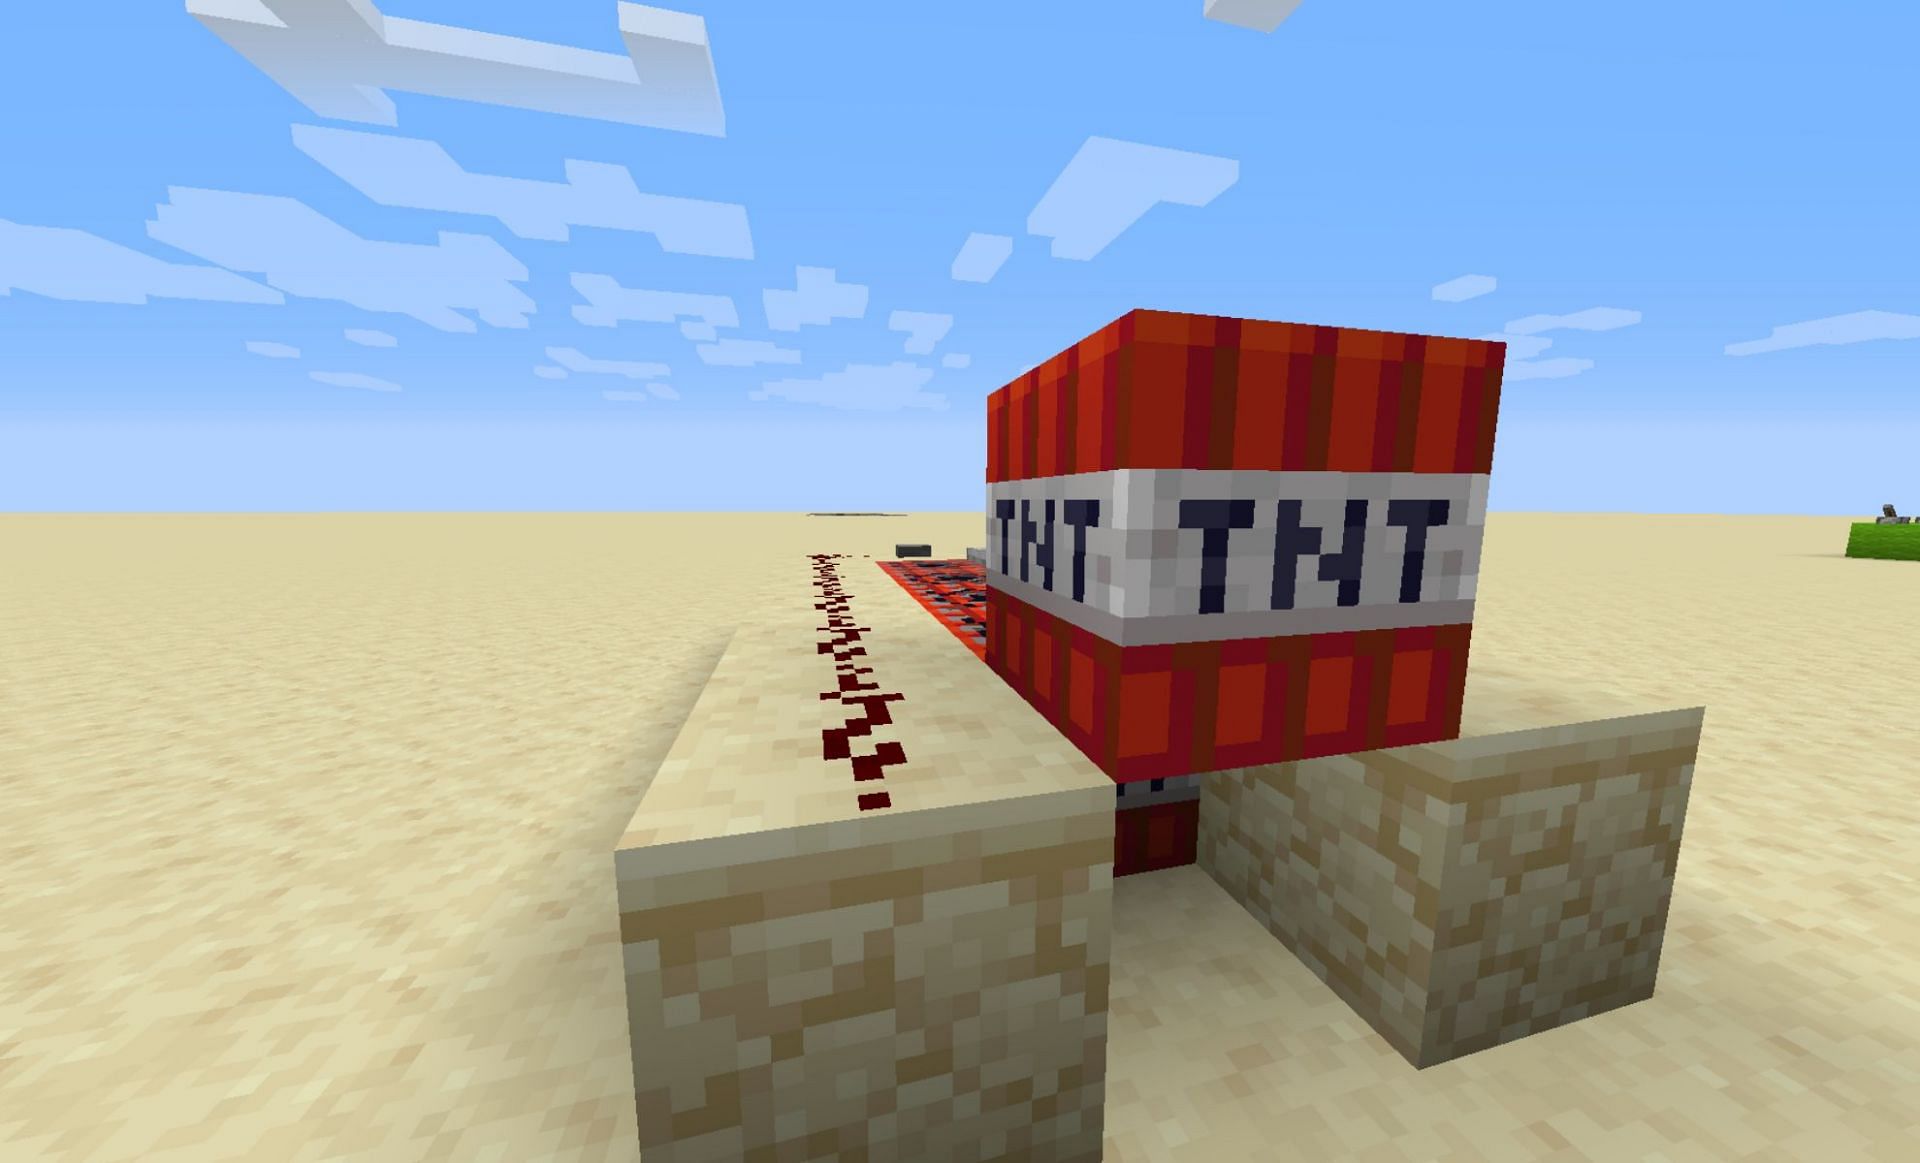 TNT cannon (Image via Minecraft Wiki)